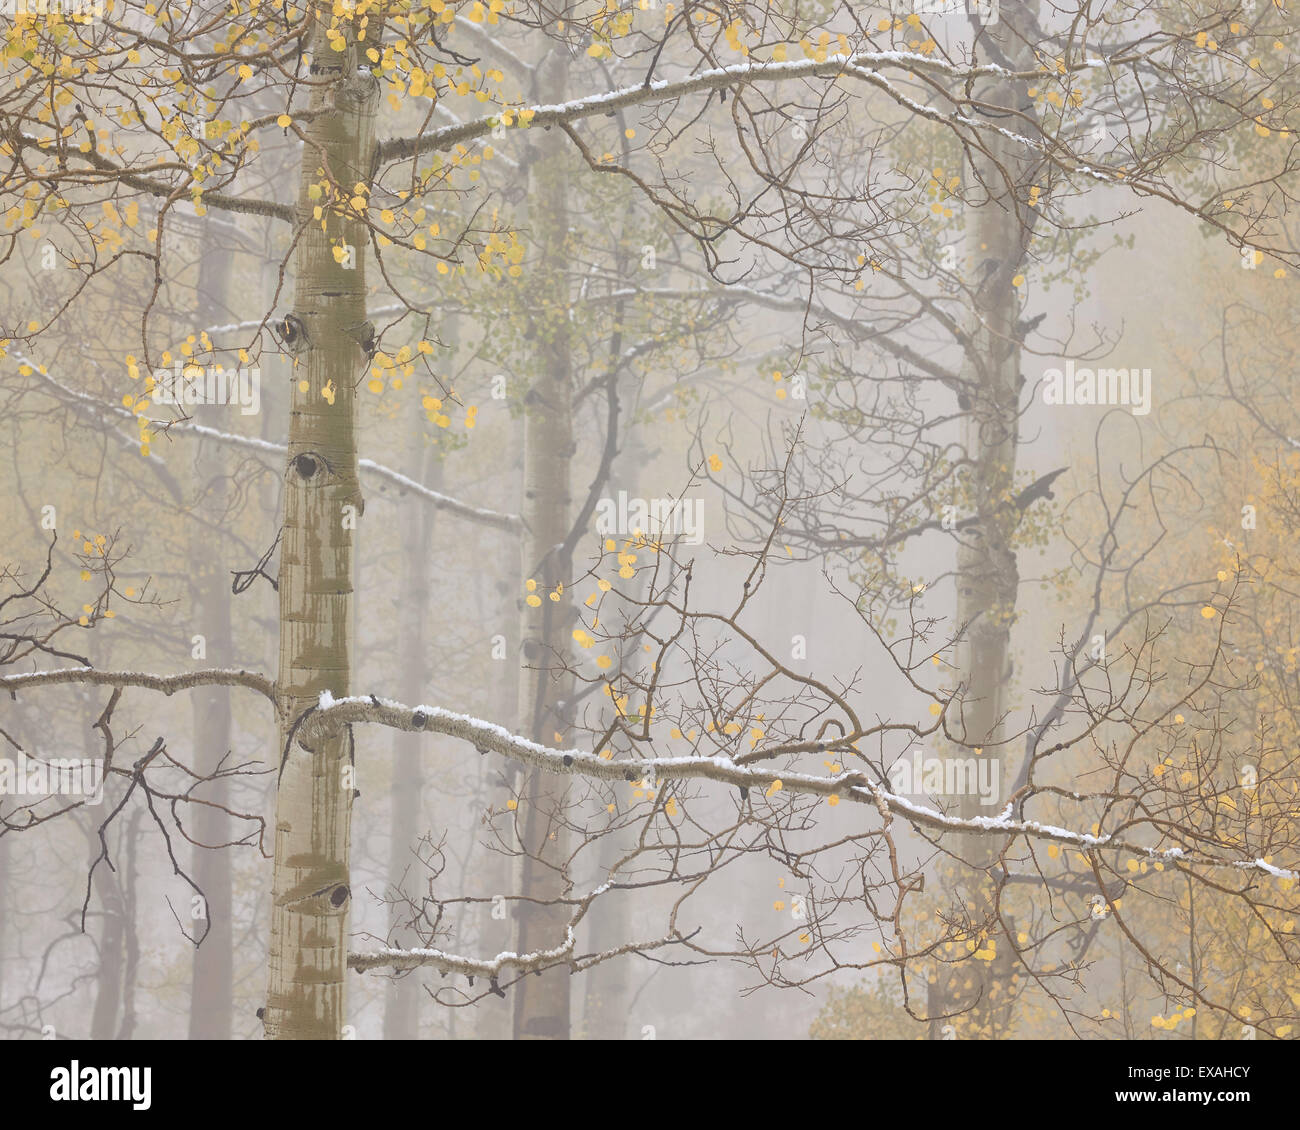 Les trembles à l'automne dans le brouillard, Grand Mesa National Forest, Colorado, États-Unis d'Amérique, Amérique du Nord Banque D'Images